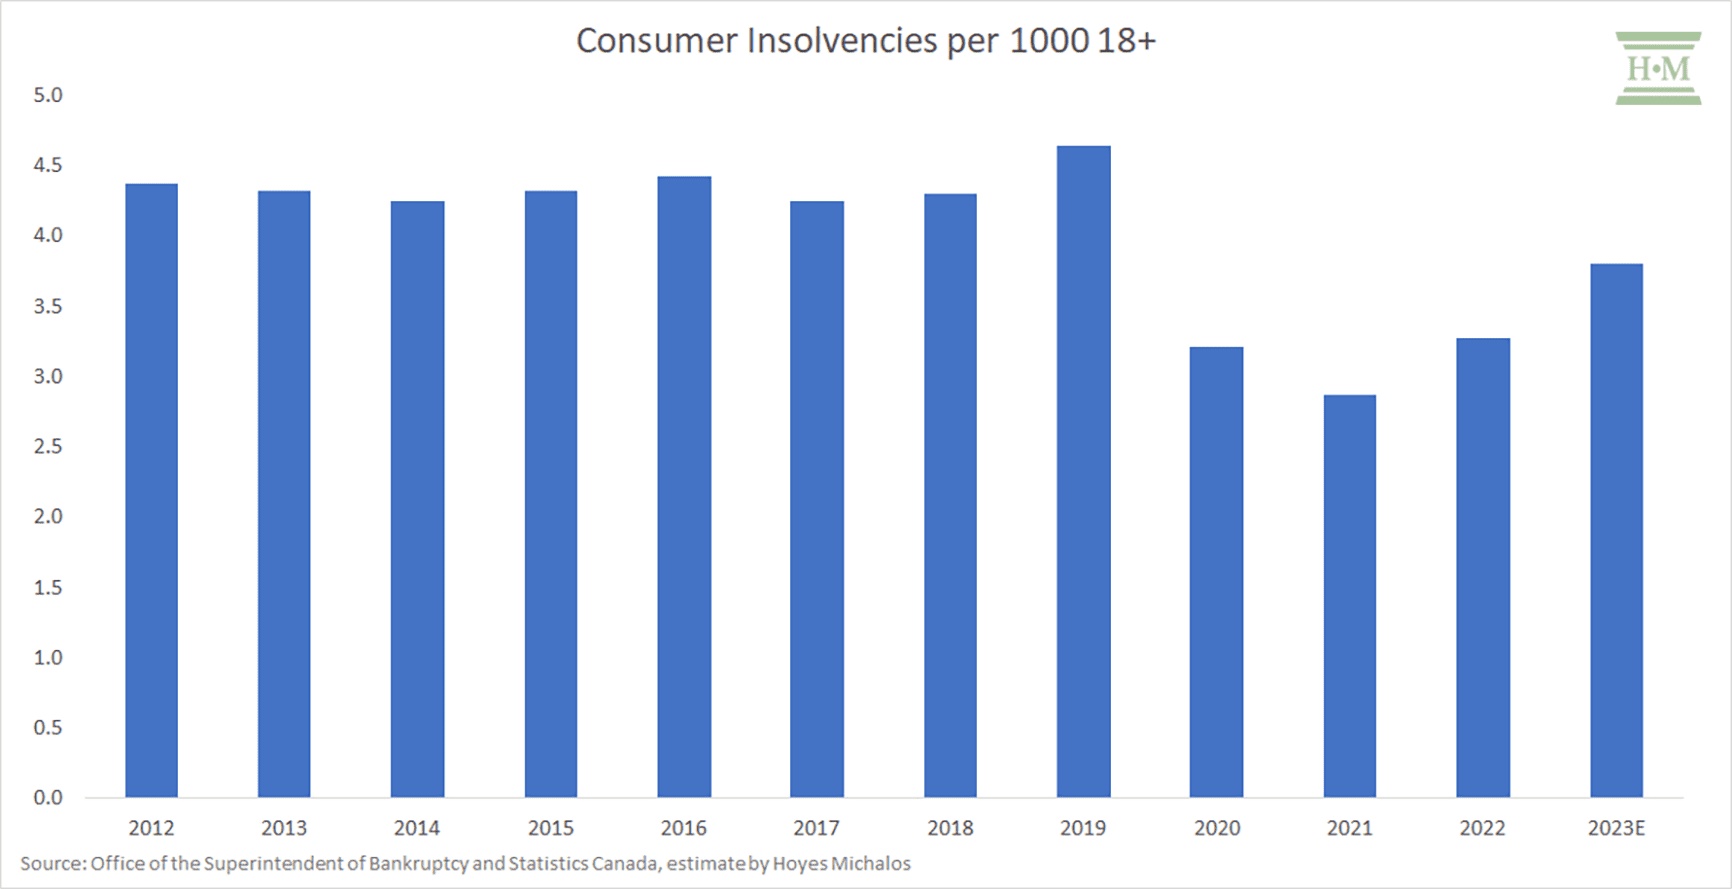 Consumer Insolvencies per 1000 18